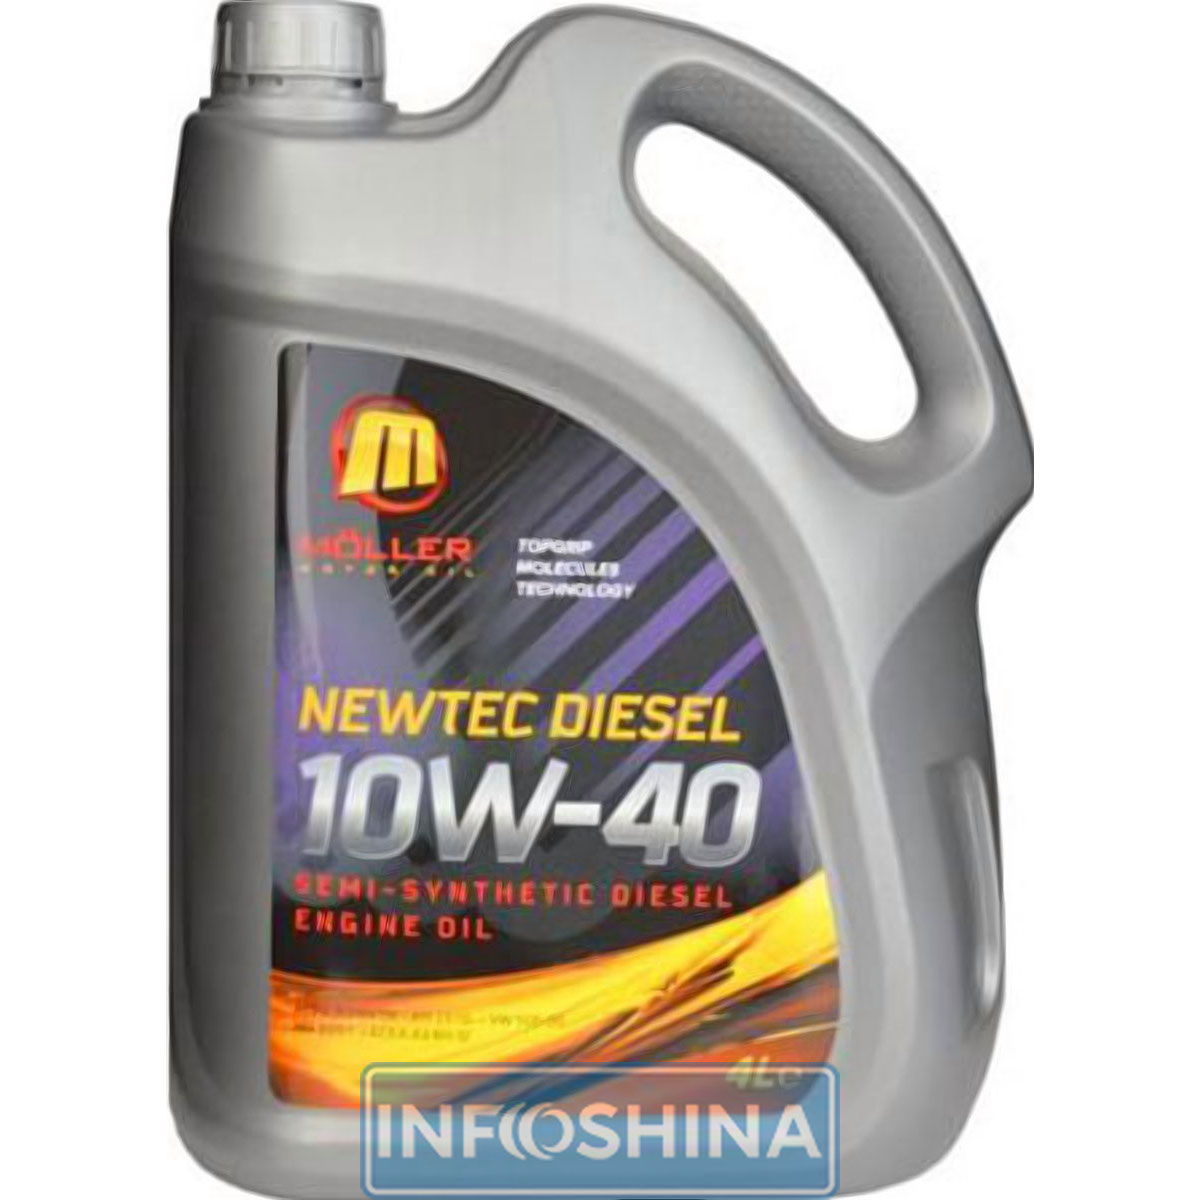 Купить масло Moller Diesel Newtec 10W-40 (4л)